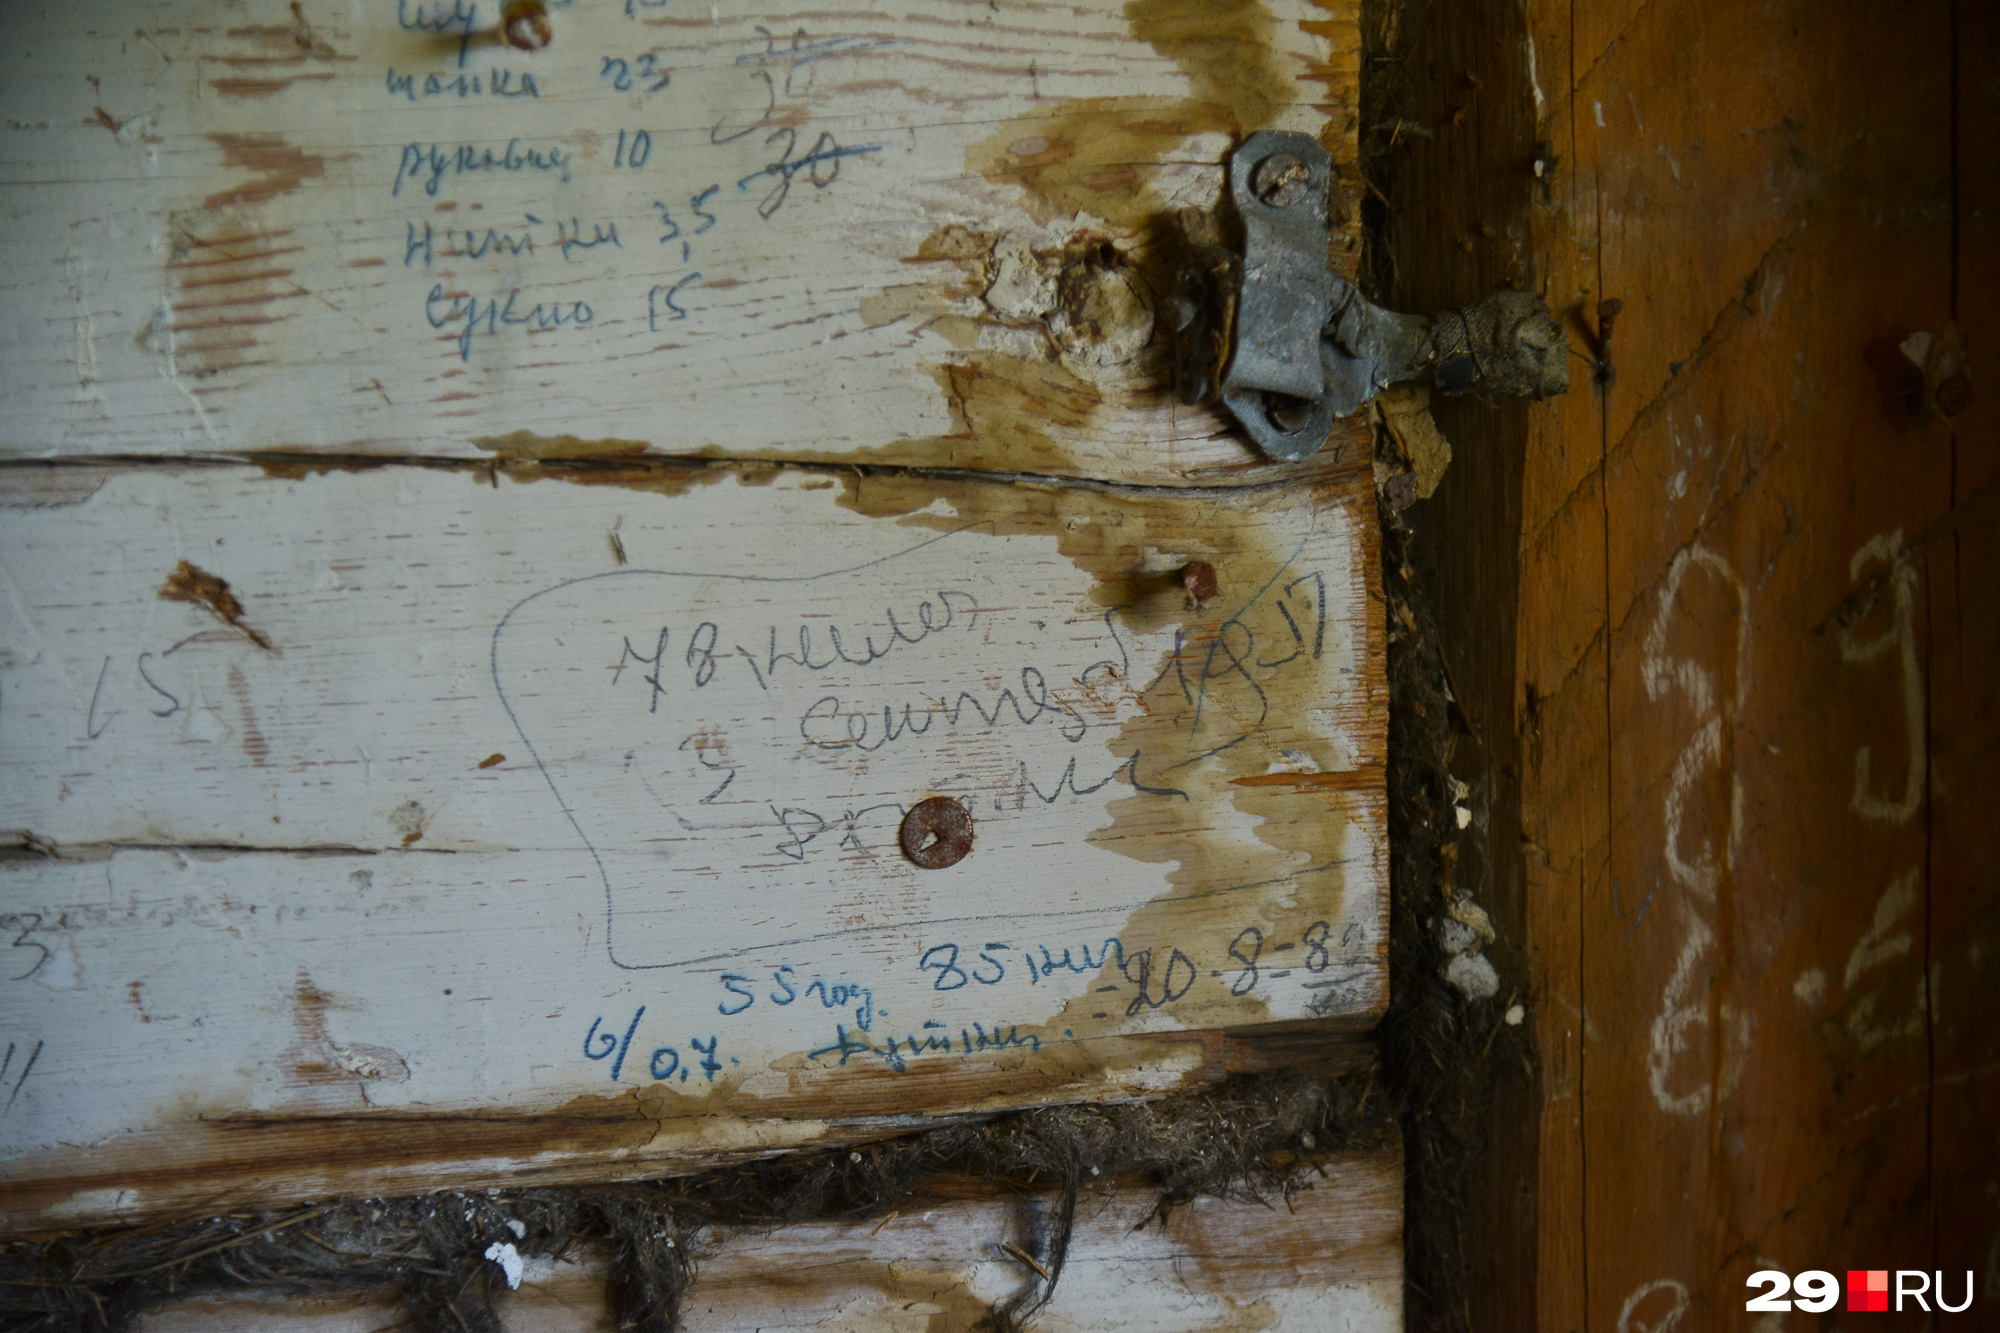 На стенах сохранились даже записи, оставленные работниками швейного цеха. «Шапка — 23. Рукавиц 10. Нитки — 35. Сукно — 15»